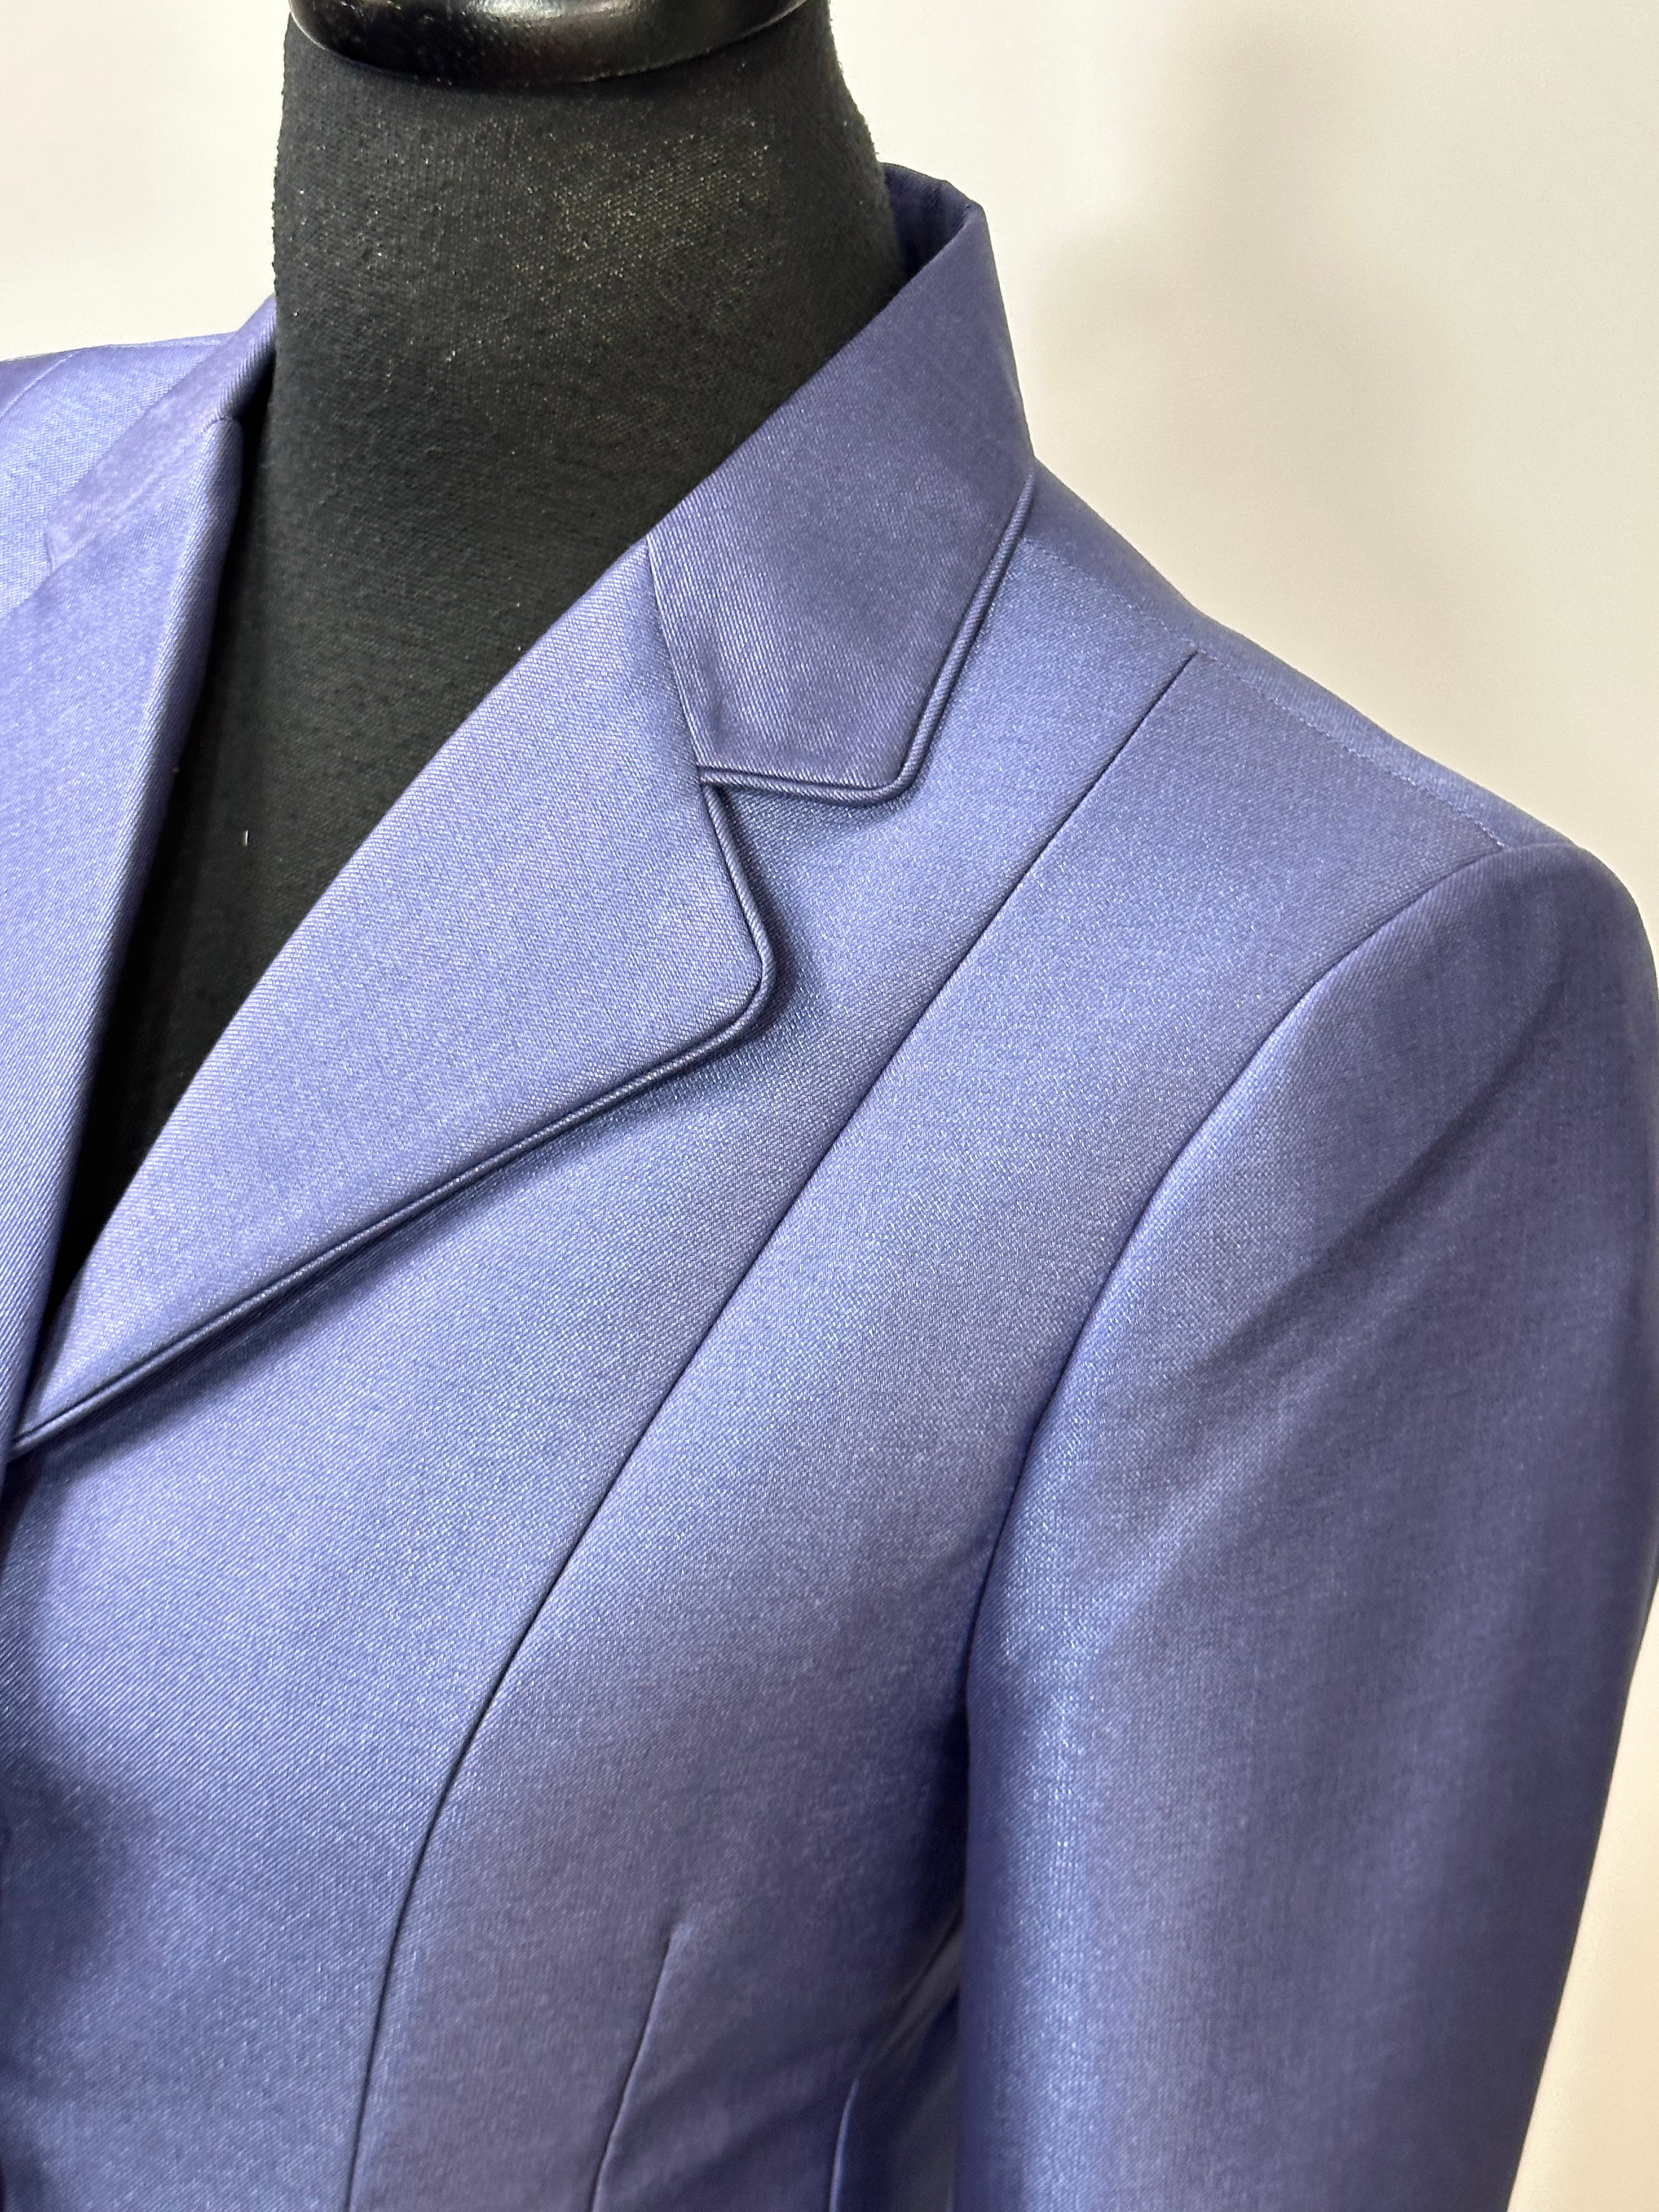 English Show Coat Periwinkle. Blue Sheen Fabric Code R340C